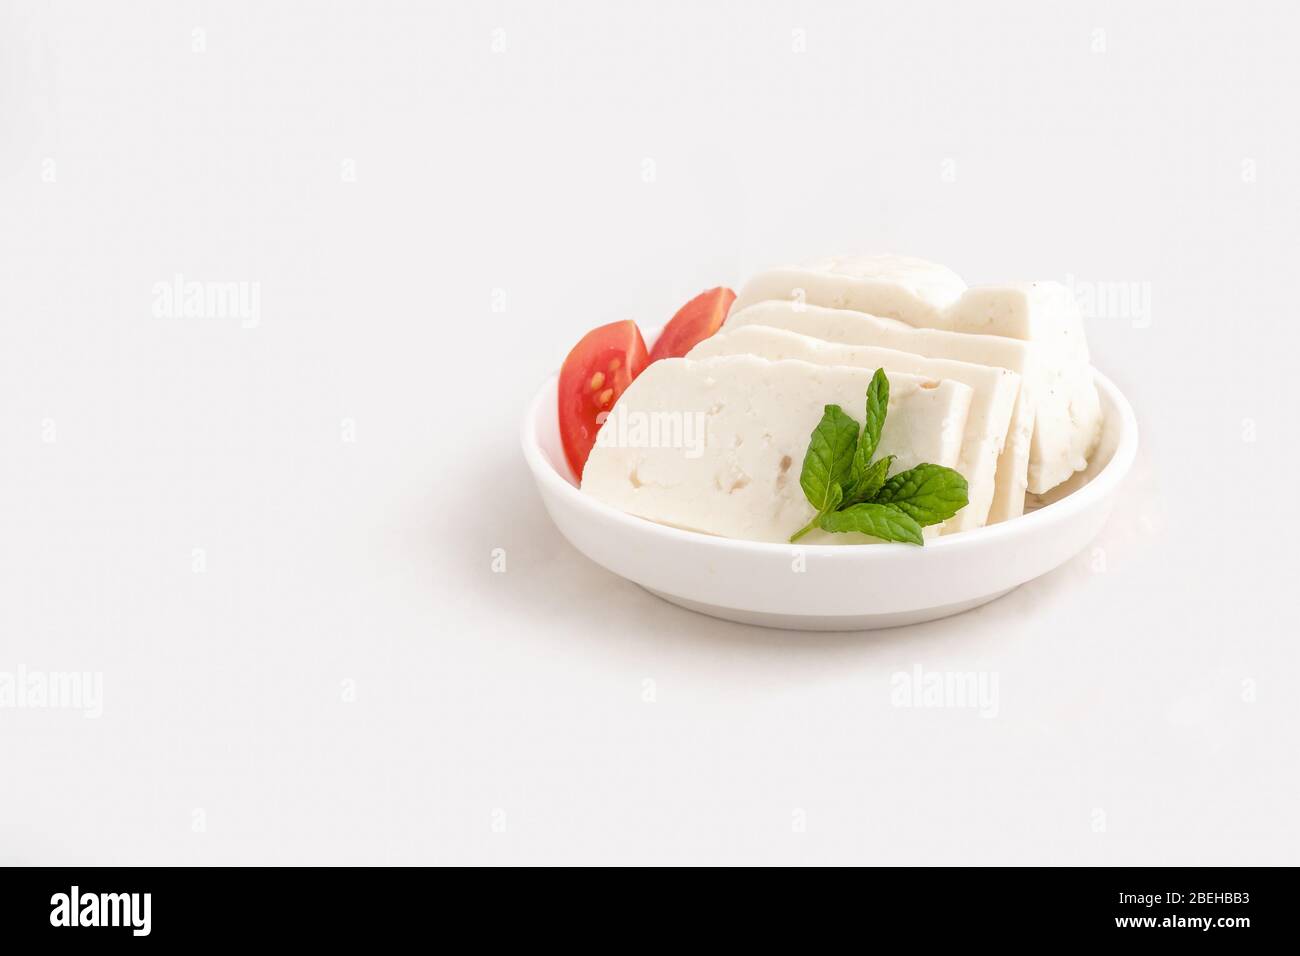 Halloumi cheese in white bowl Stock Photo